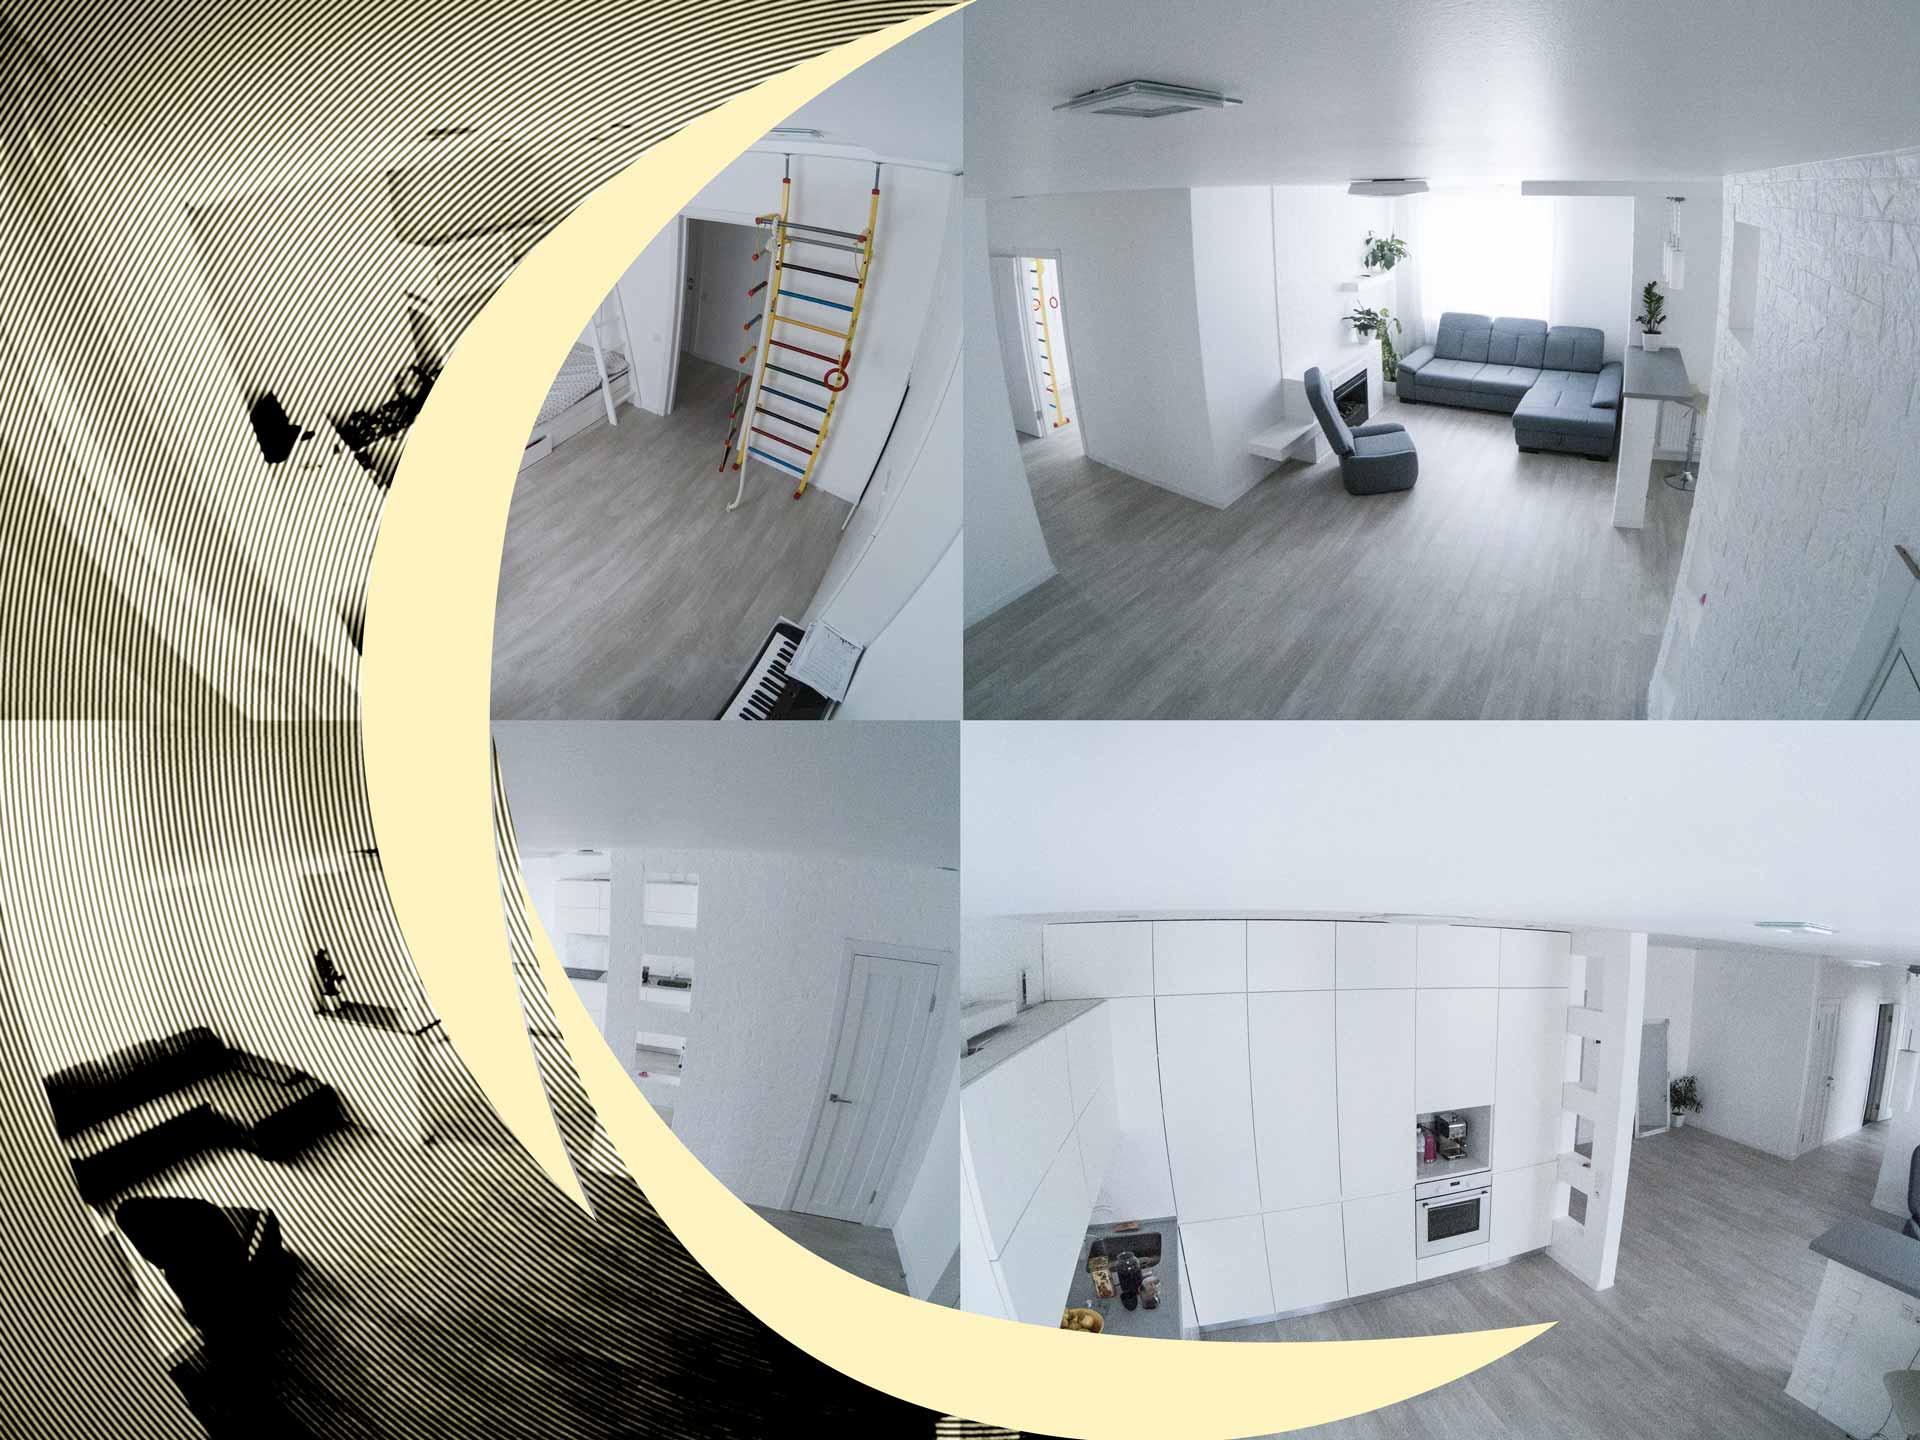 4 vues différentes prises par des caméras de sécurité dans une maison